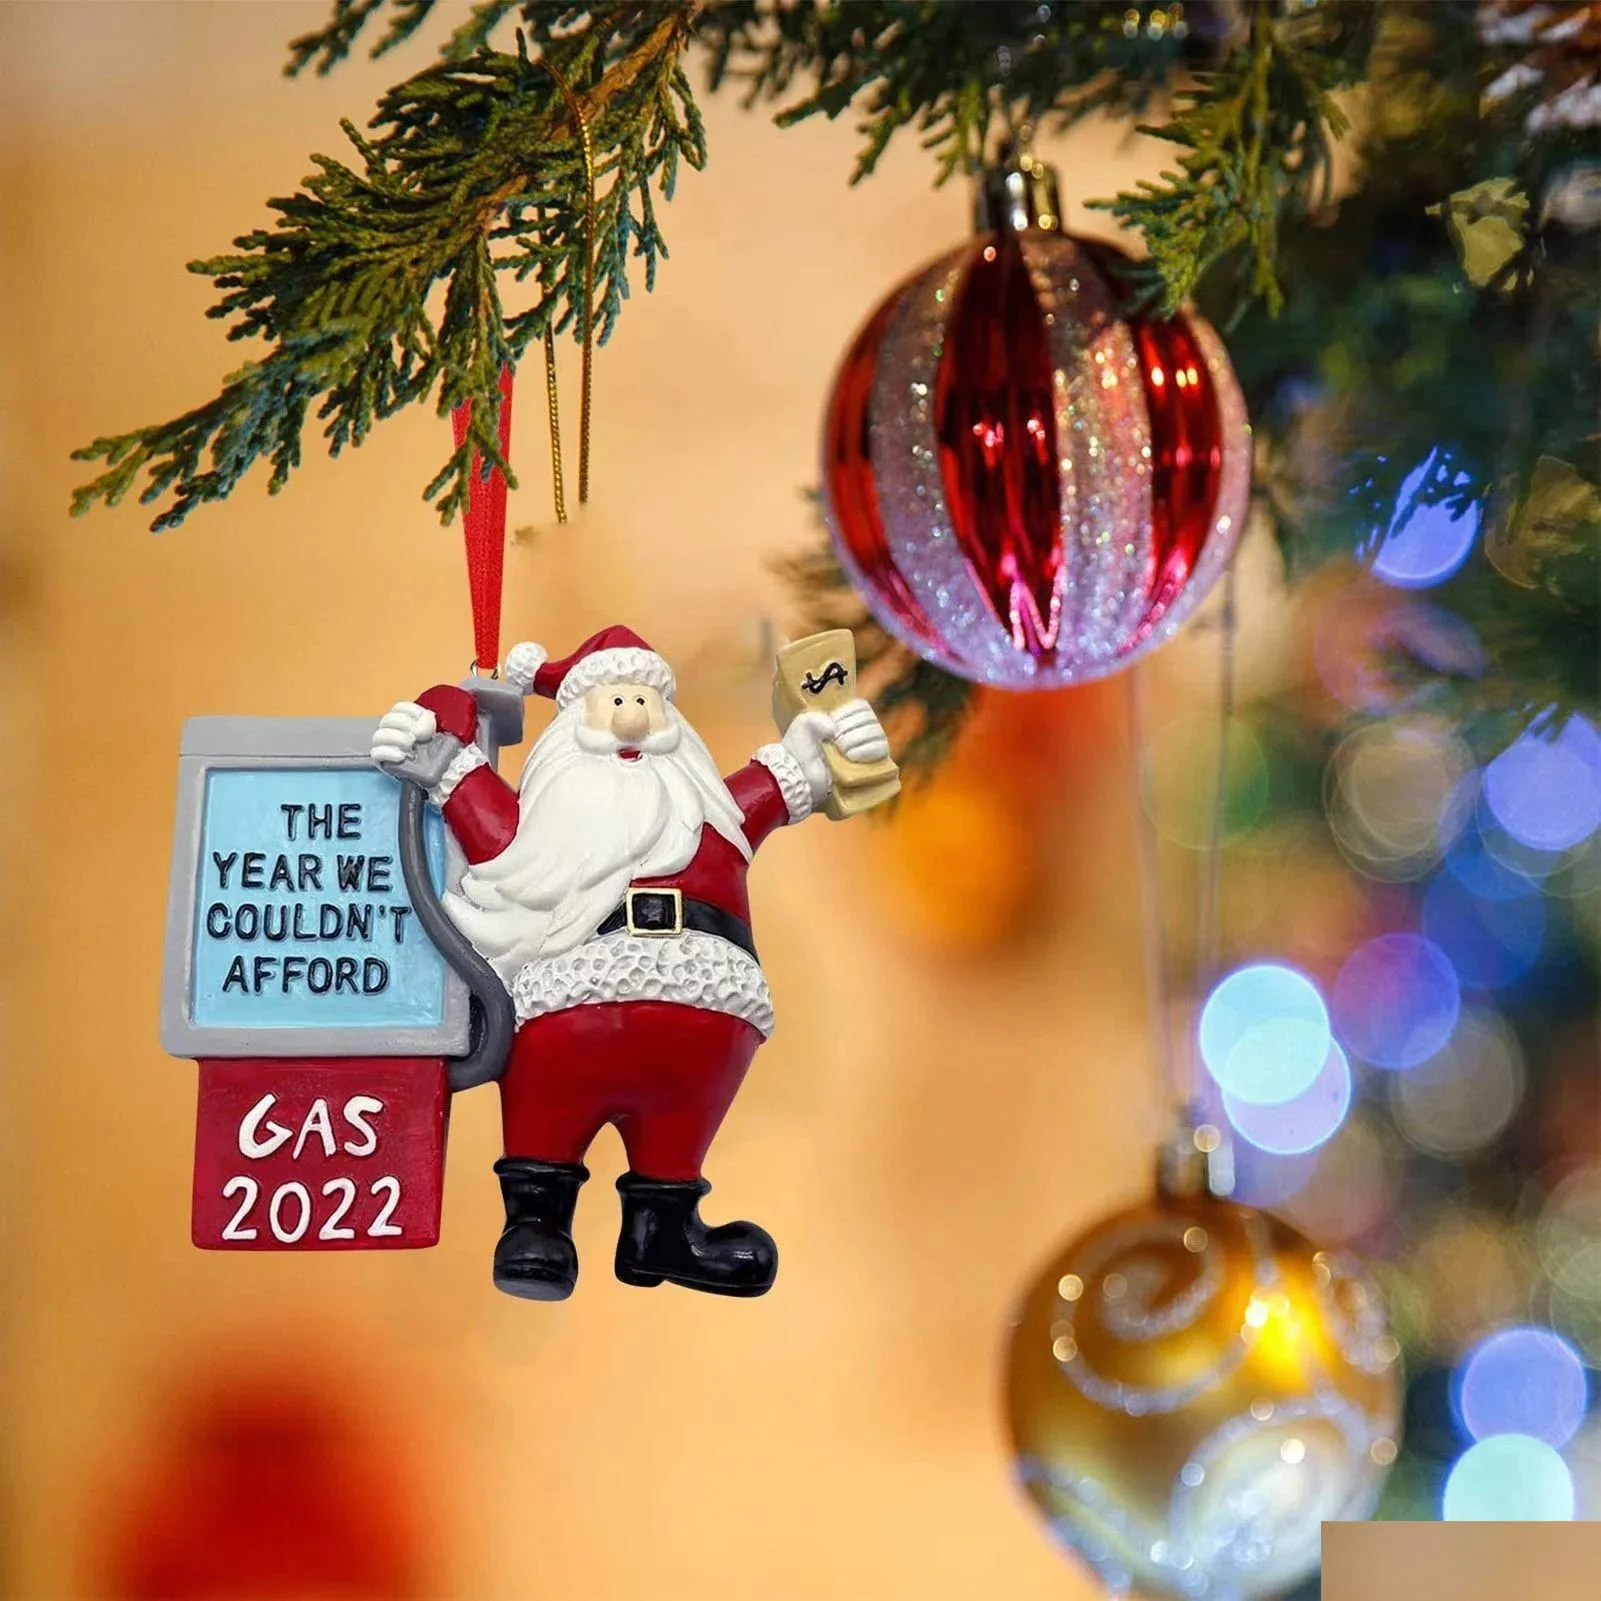 Рождественские украшения смешные рождественские украшения Санта -Клаус Год, когда мы не даем газ 2022 Новое дерево подвесное украшение, капля de dhnbl